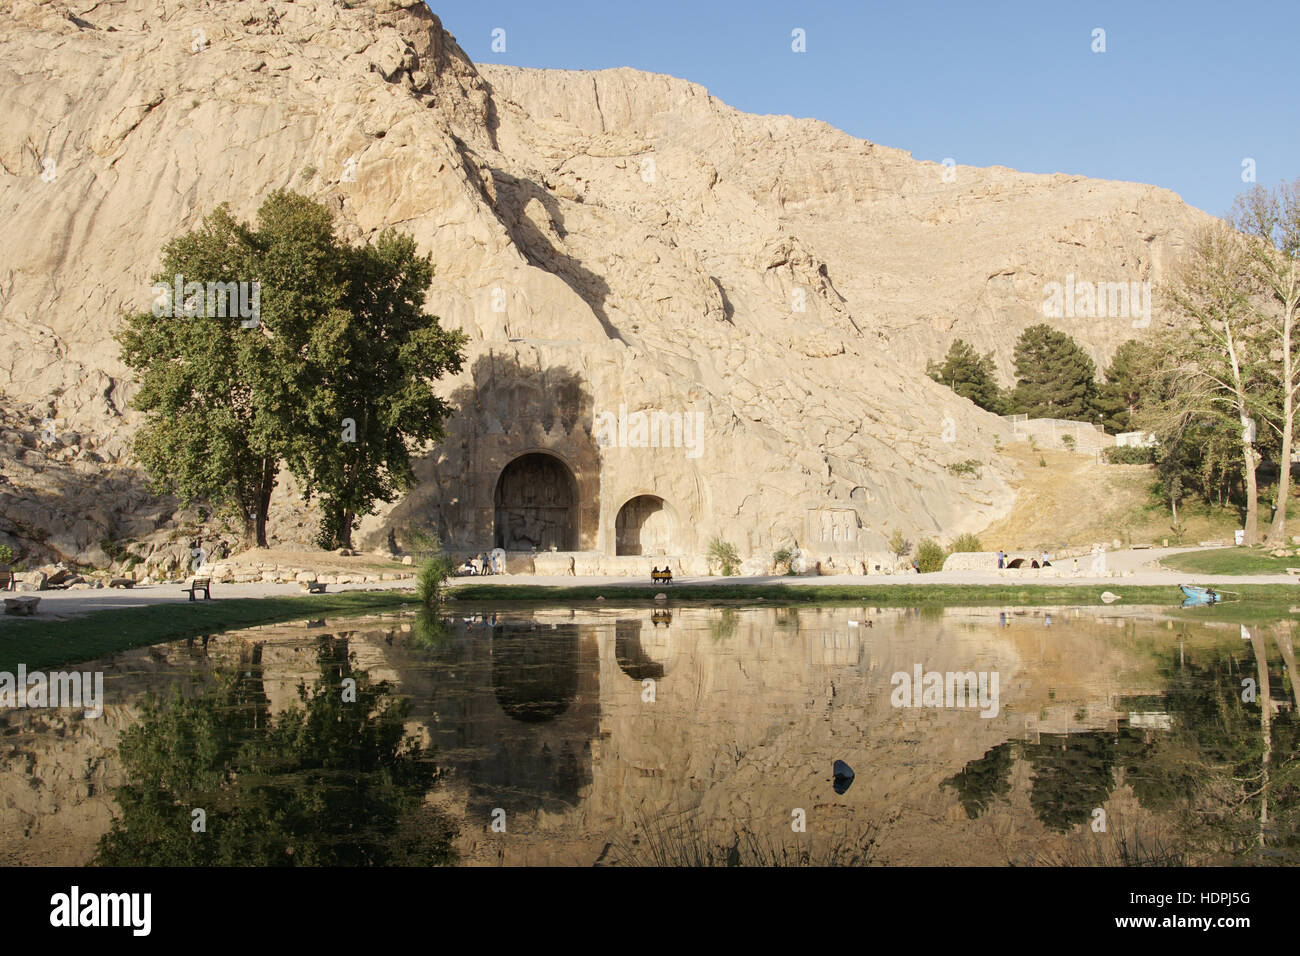 KERMANSHAH, IRAN - 3. Oktober 2016: Höhlen Taq-e Bostan, historische Stätte von Kermanshah am 3. Oktober 2016 im Iran, Asien Stockfoto